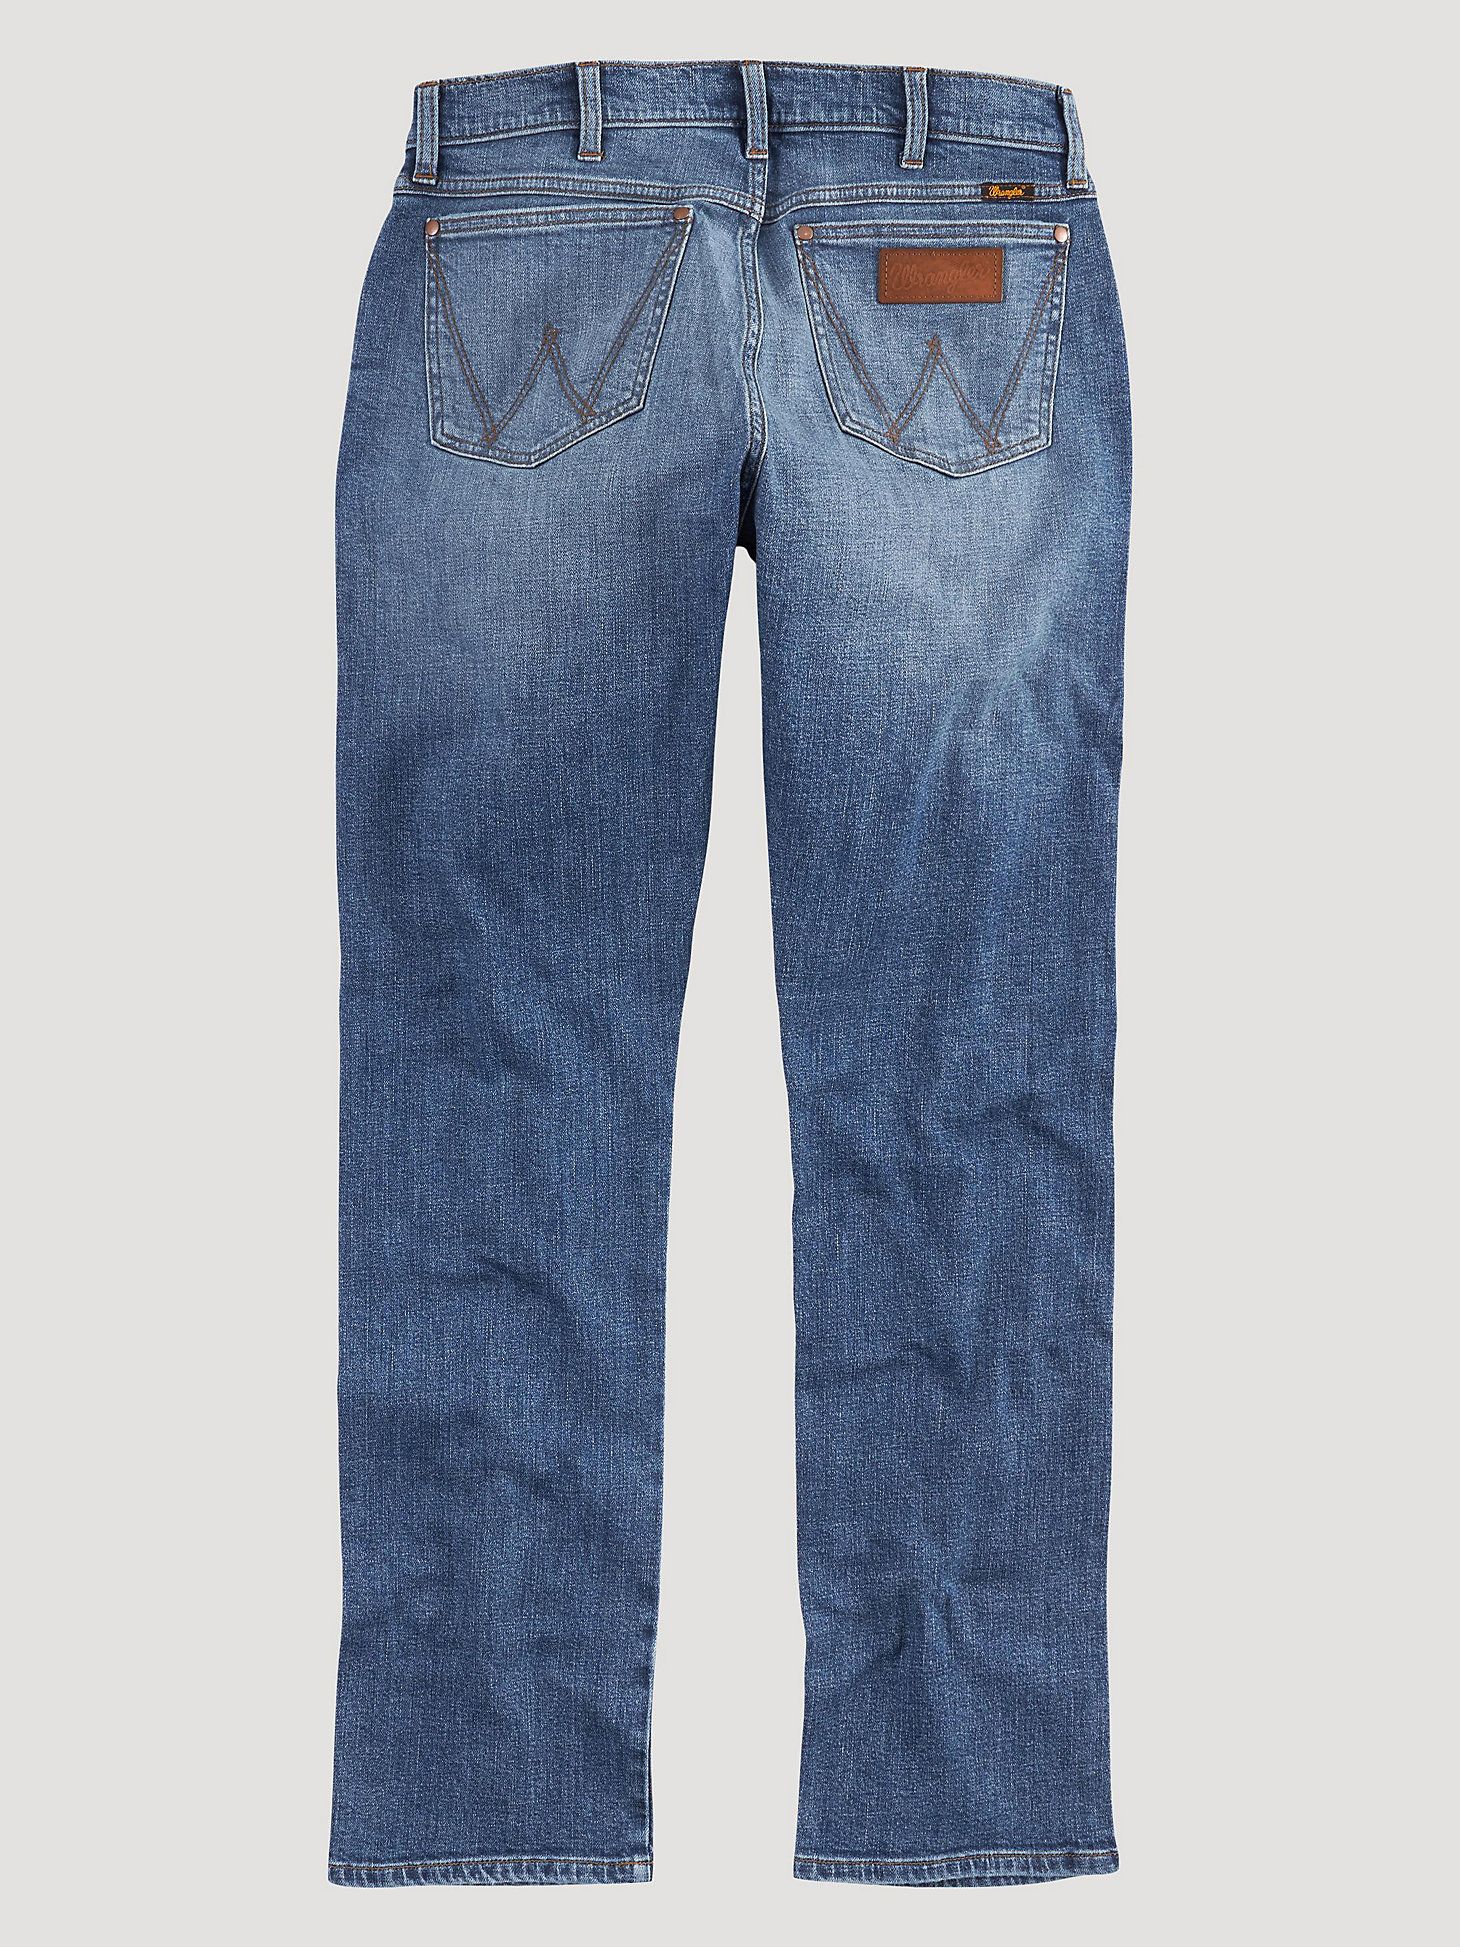 The Wrangler Retro® Premium Jean: Men's Slim Straight in Ansley | Wrangler